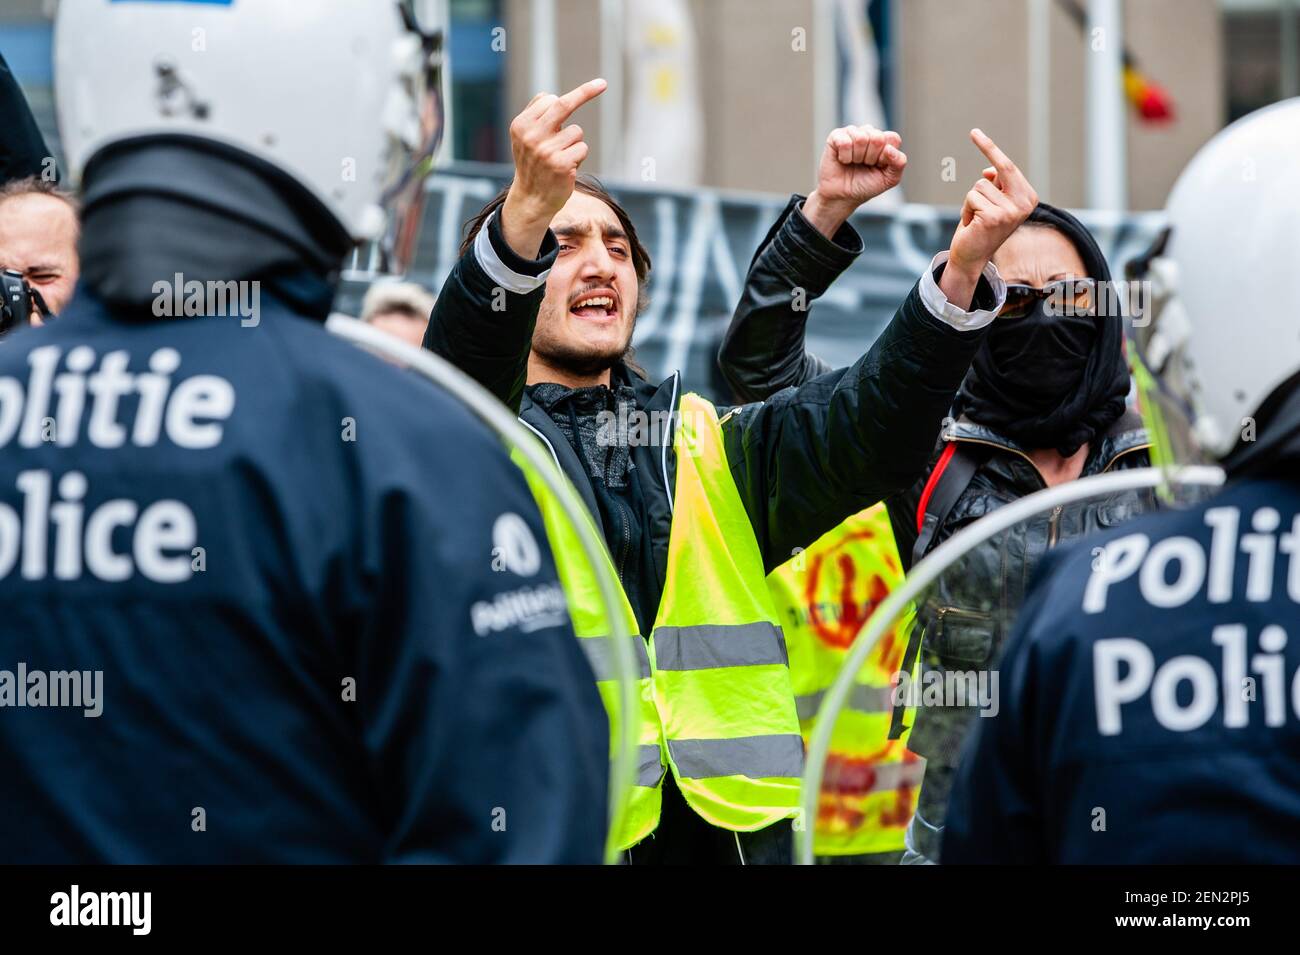 Un gilet jaune est vu gesturer vers la police anti-émeute pendant la  manifestation. Des centaines de gilets jaunes de différentes parties de l' Europe ont protesté contre le Parlement européen lors des élections